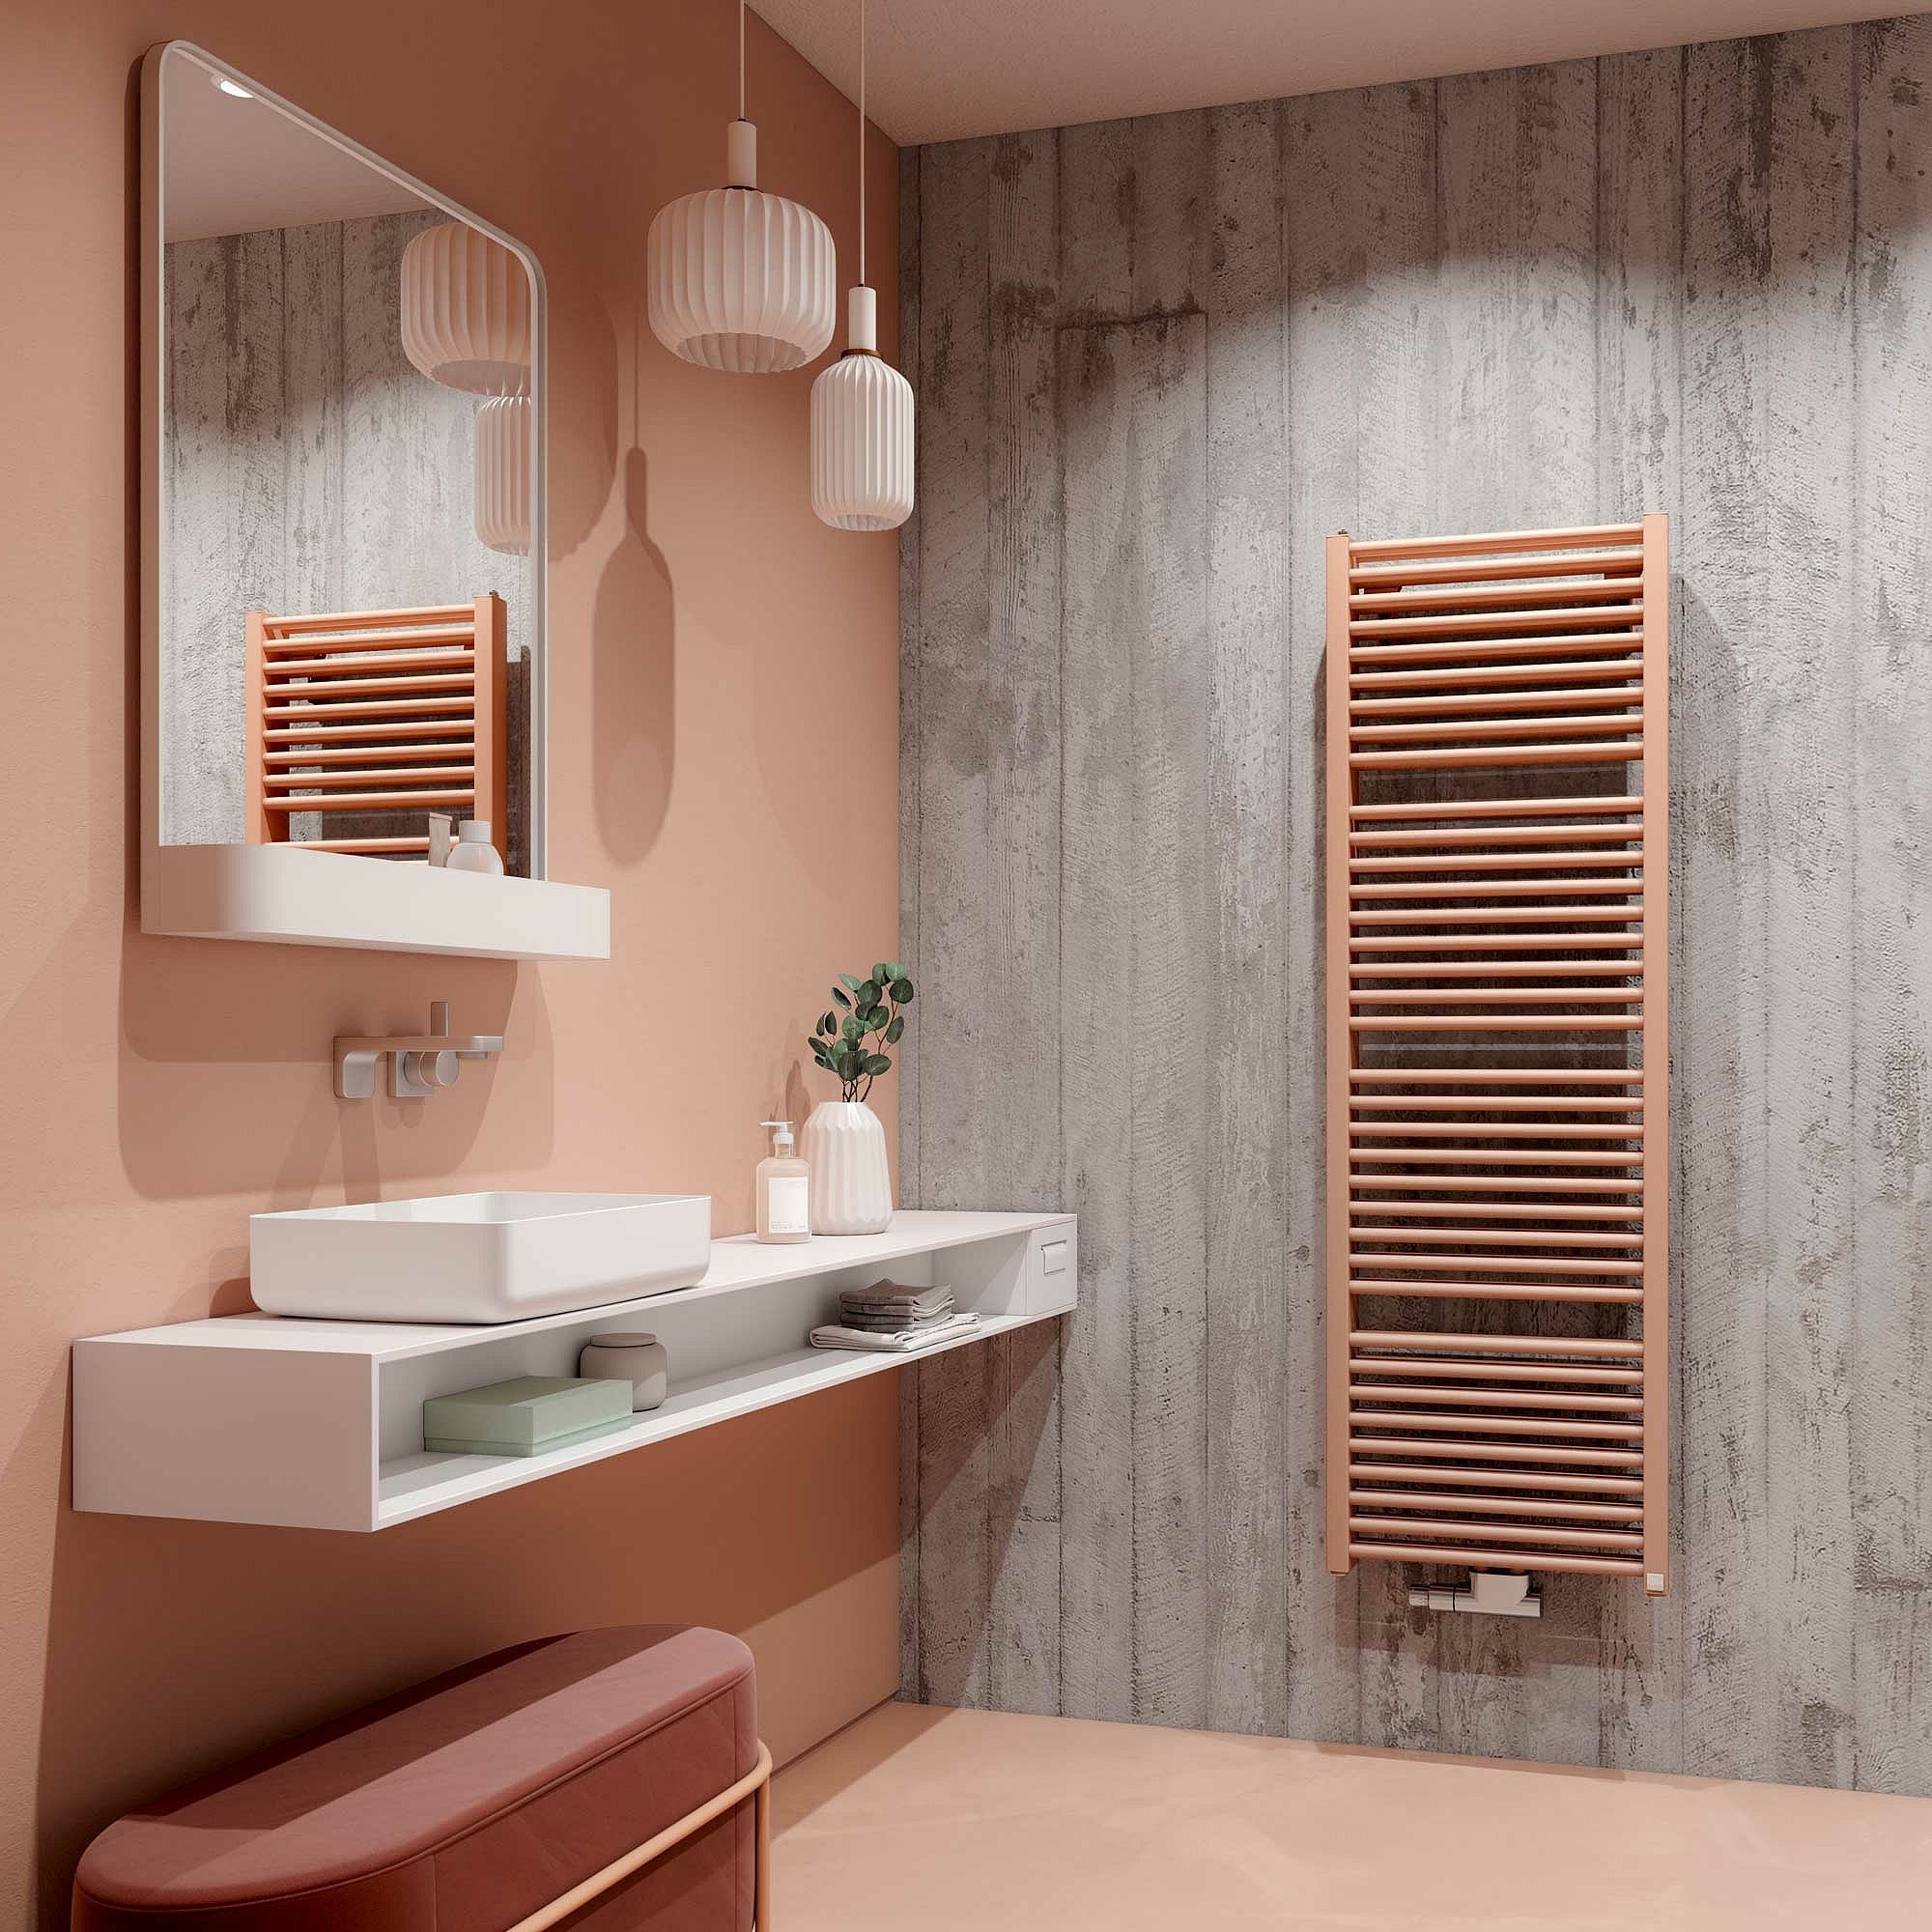 Radiateur design et de salle de bain Duett de Kermi – Design thermique classique pour votre salle de bain, avec double puissance.